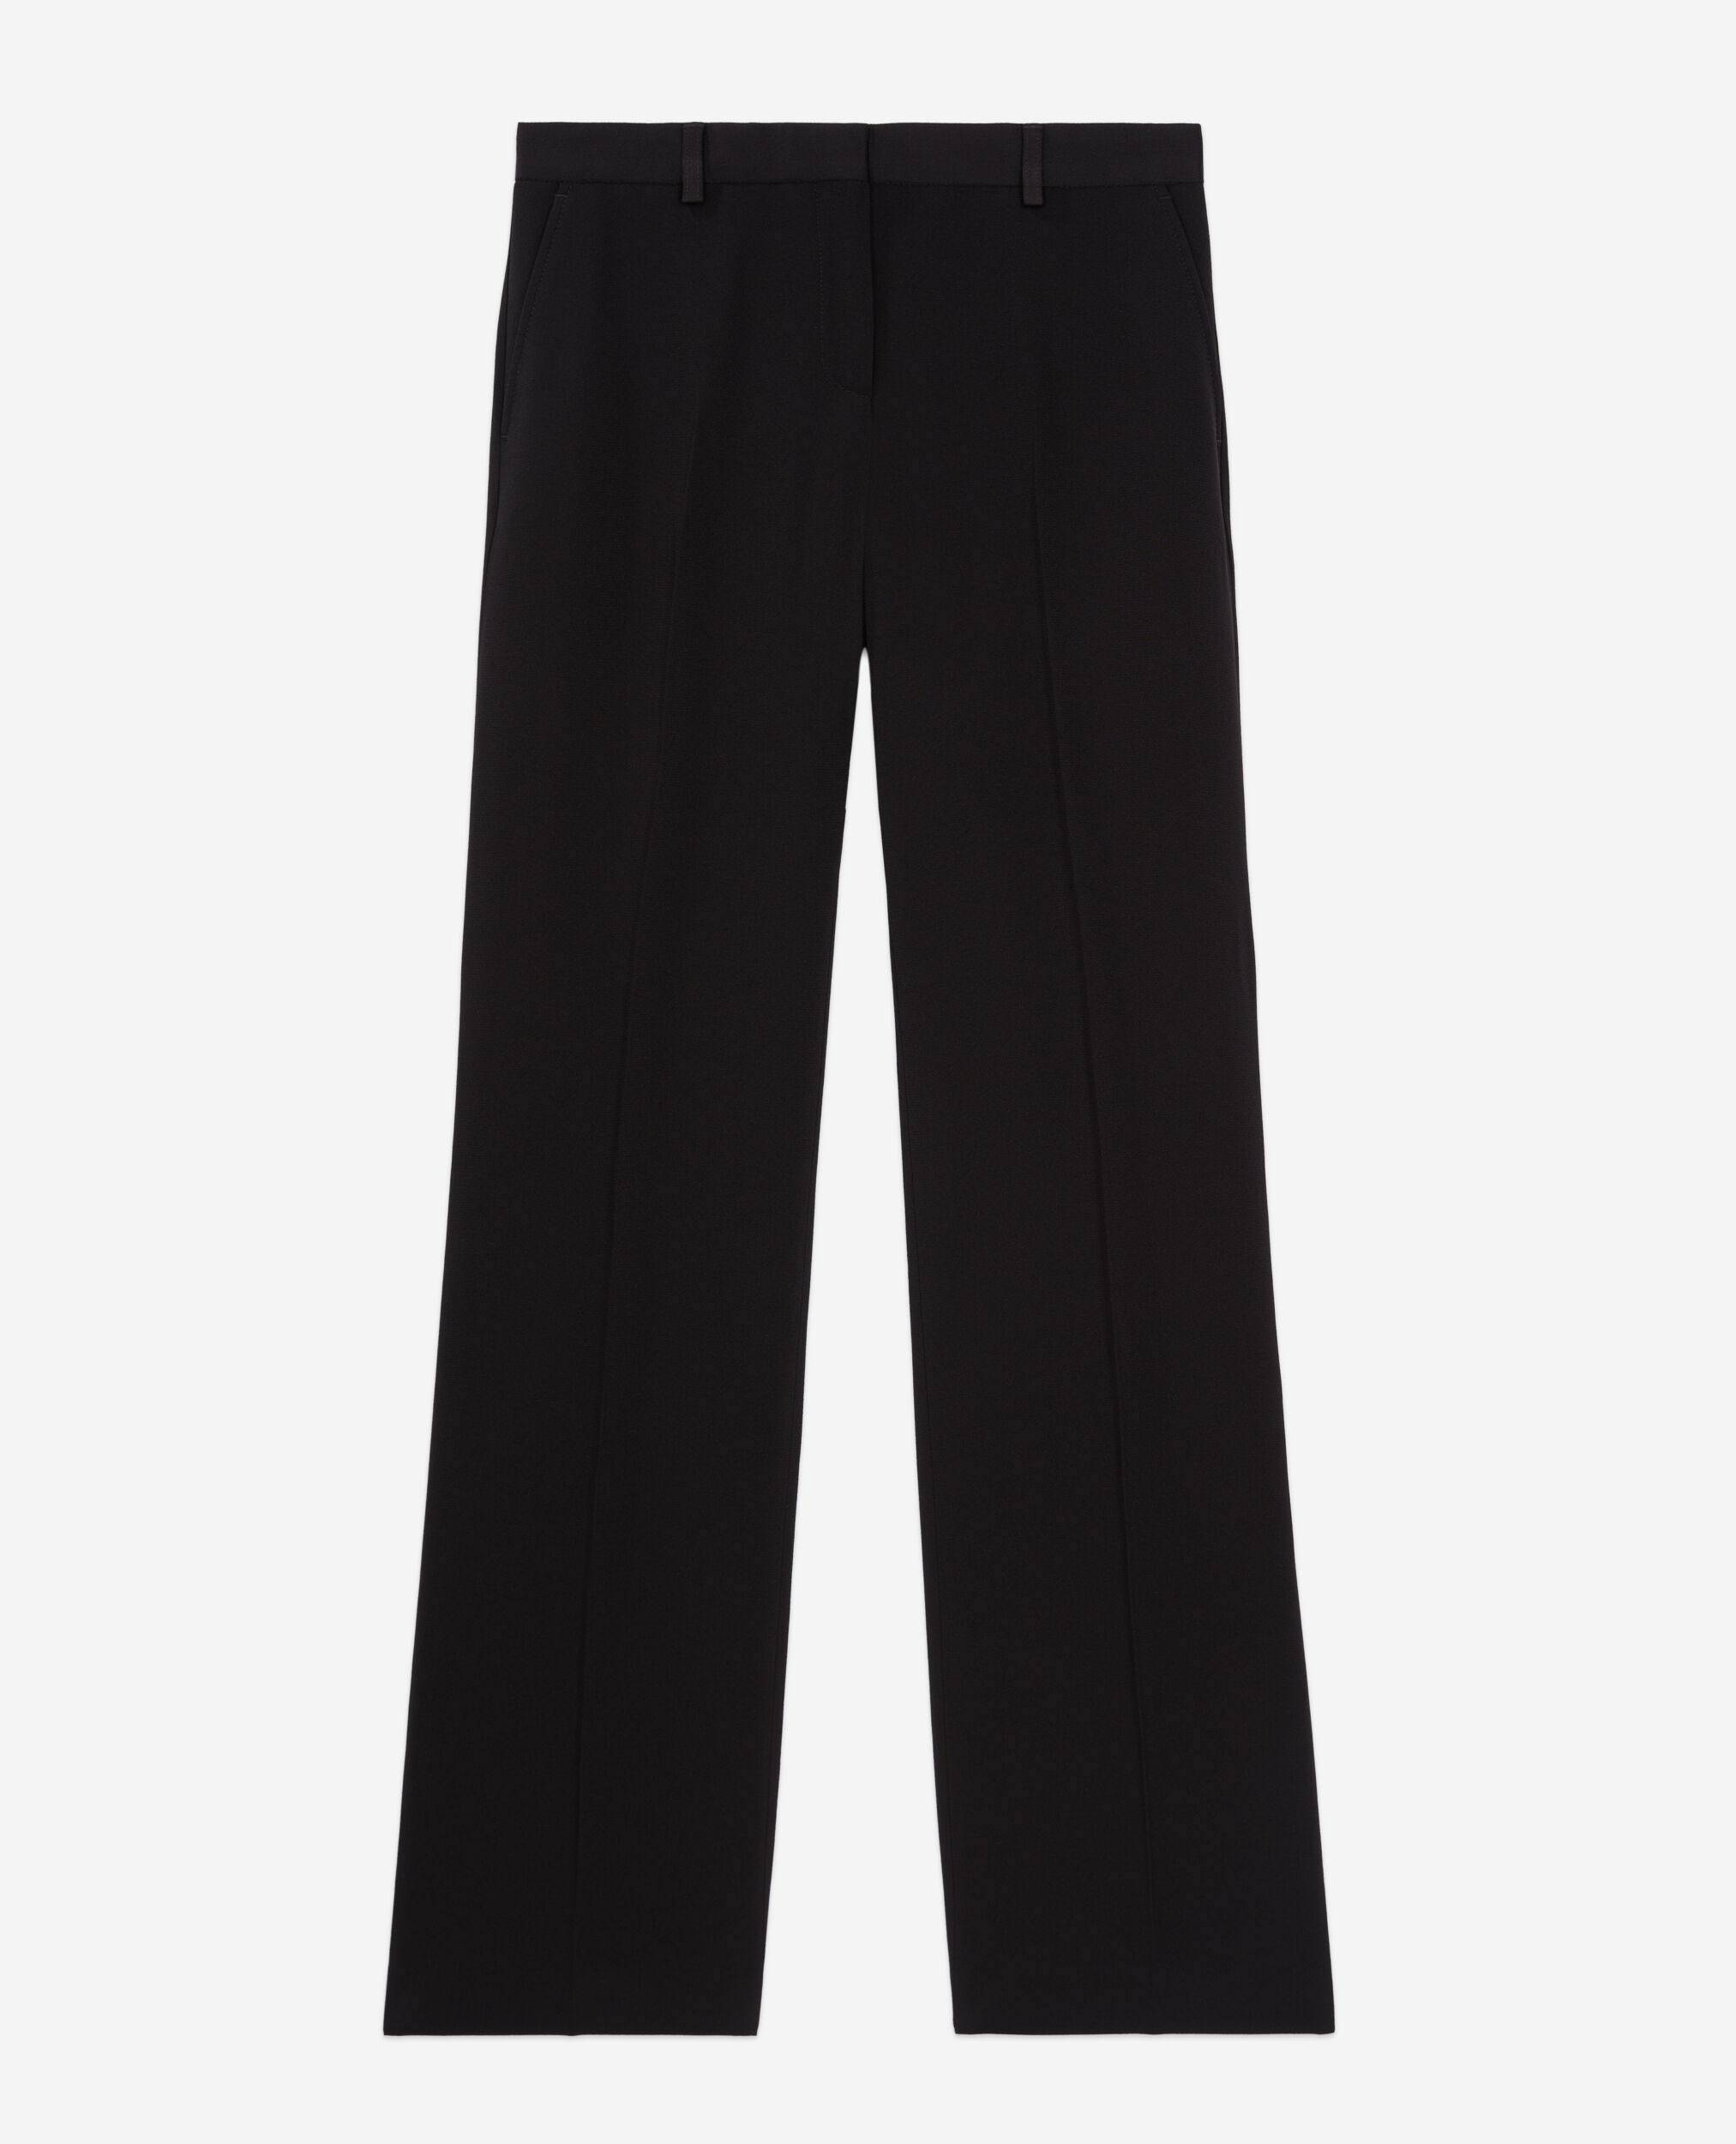 Pantalón traje negro crepé, BLACK, hi-res image number null